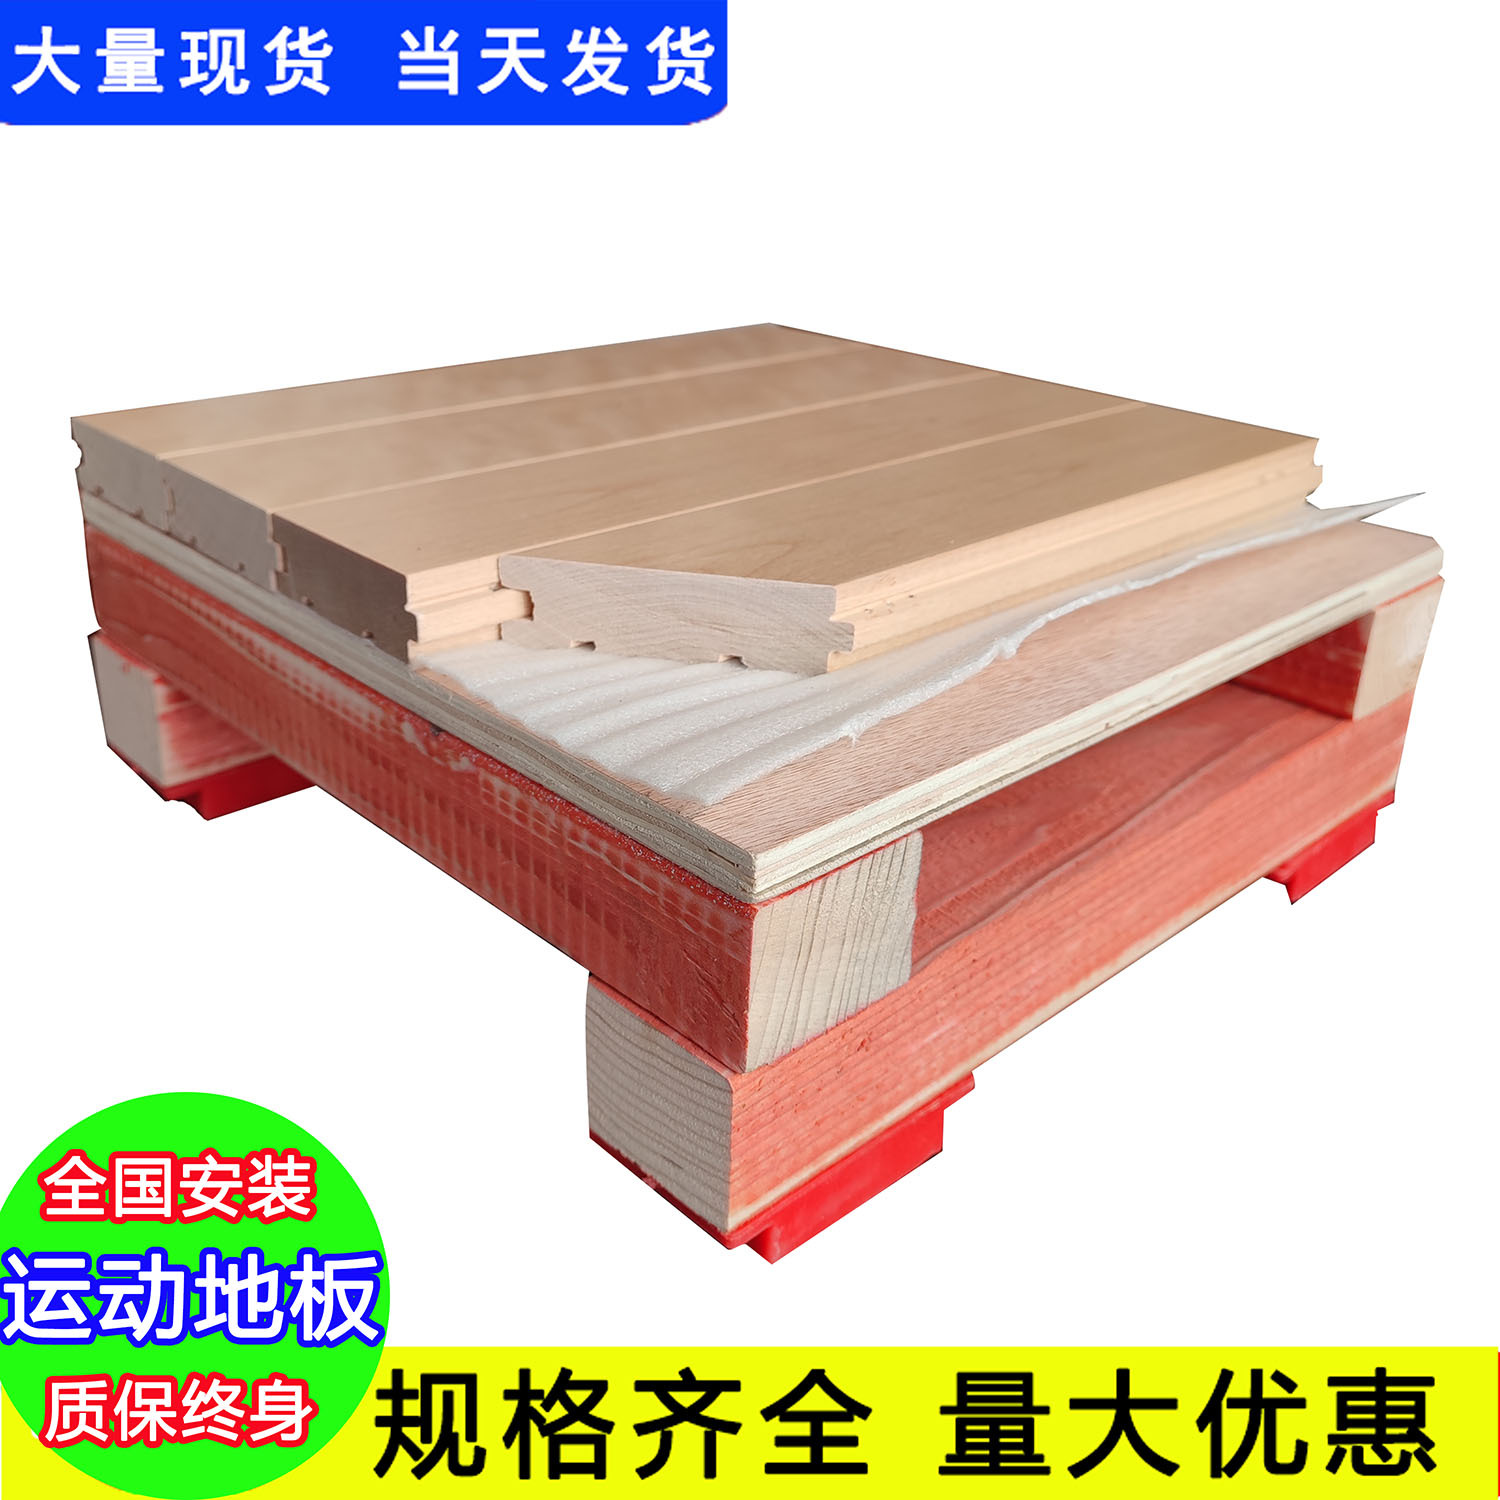 淄博桓台生产木门的厂家_枫木运动木地板生产厂家_运动枫木地板